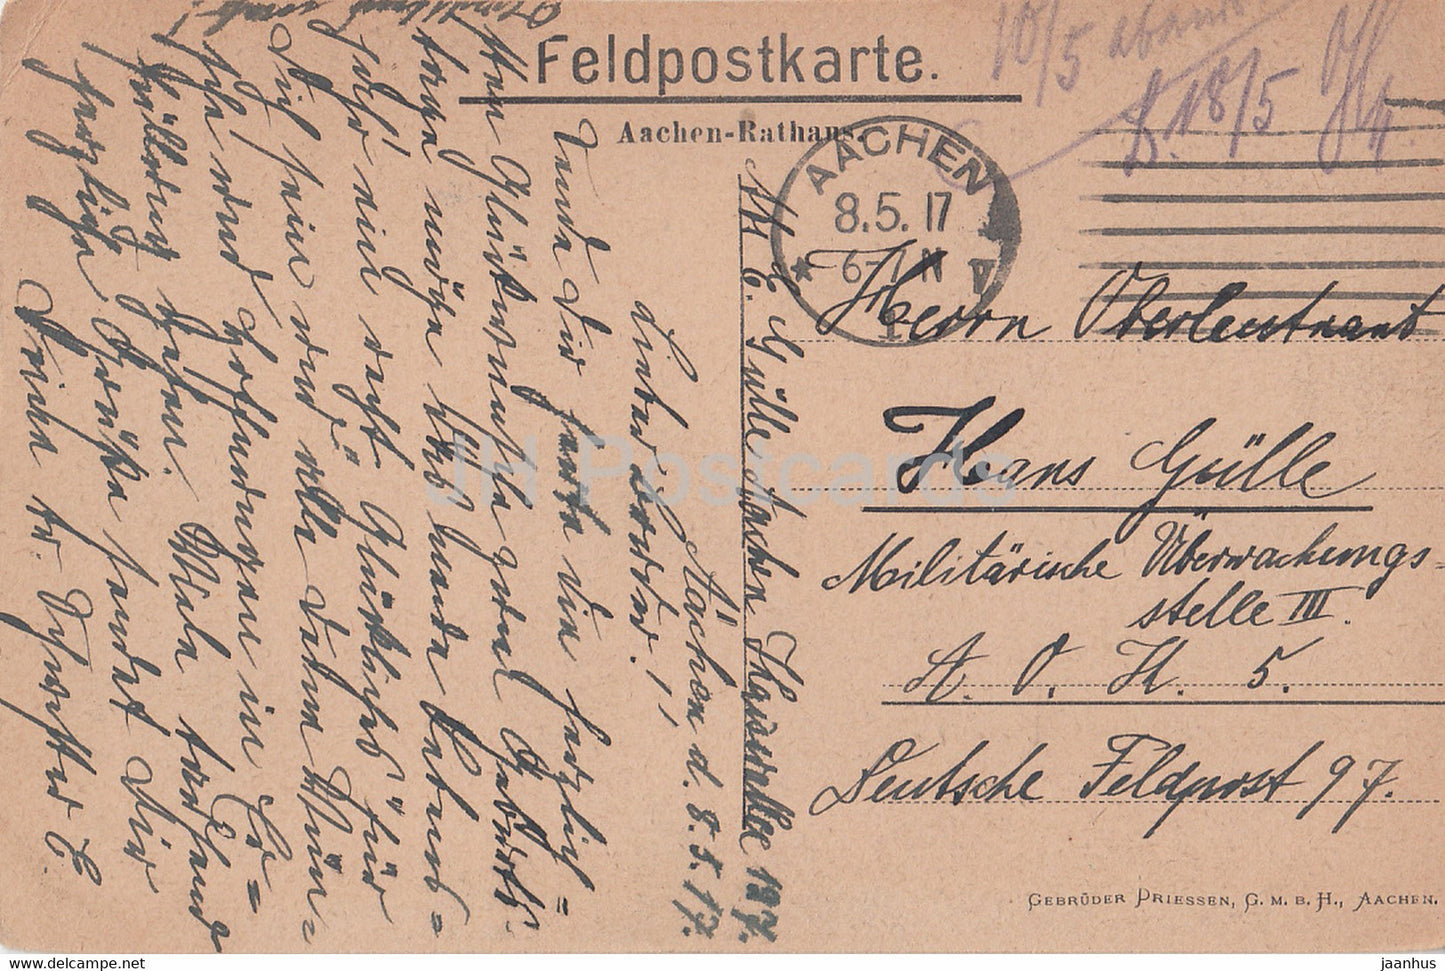 Aix-la-Chapelle - Rathaus - Feldpostkarte - 2200 - carte postale ancienne - 1917 - Allemagne - utilisé